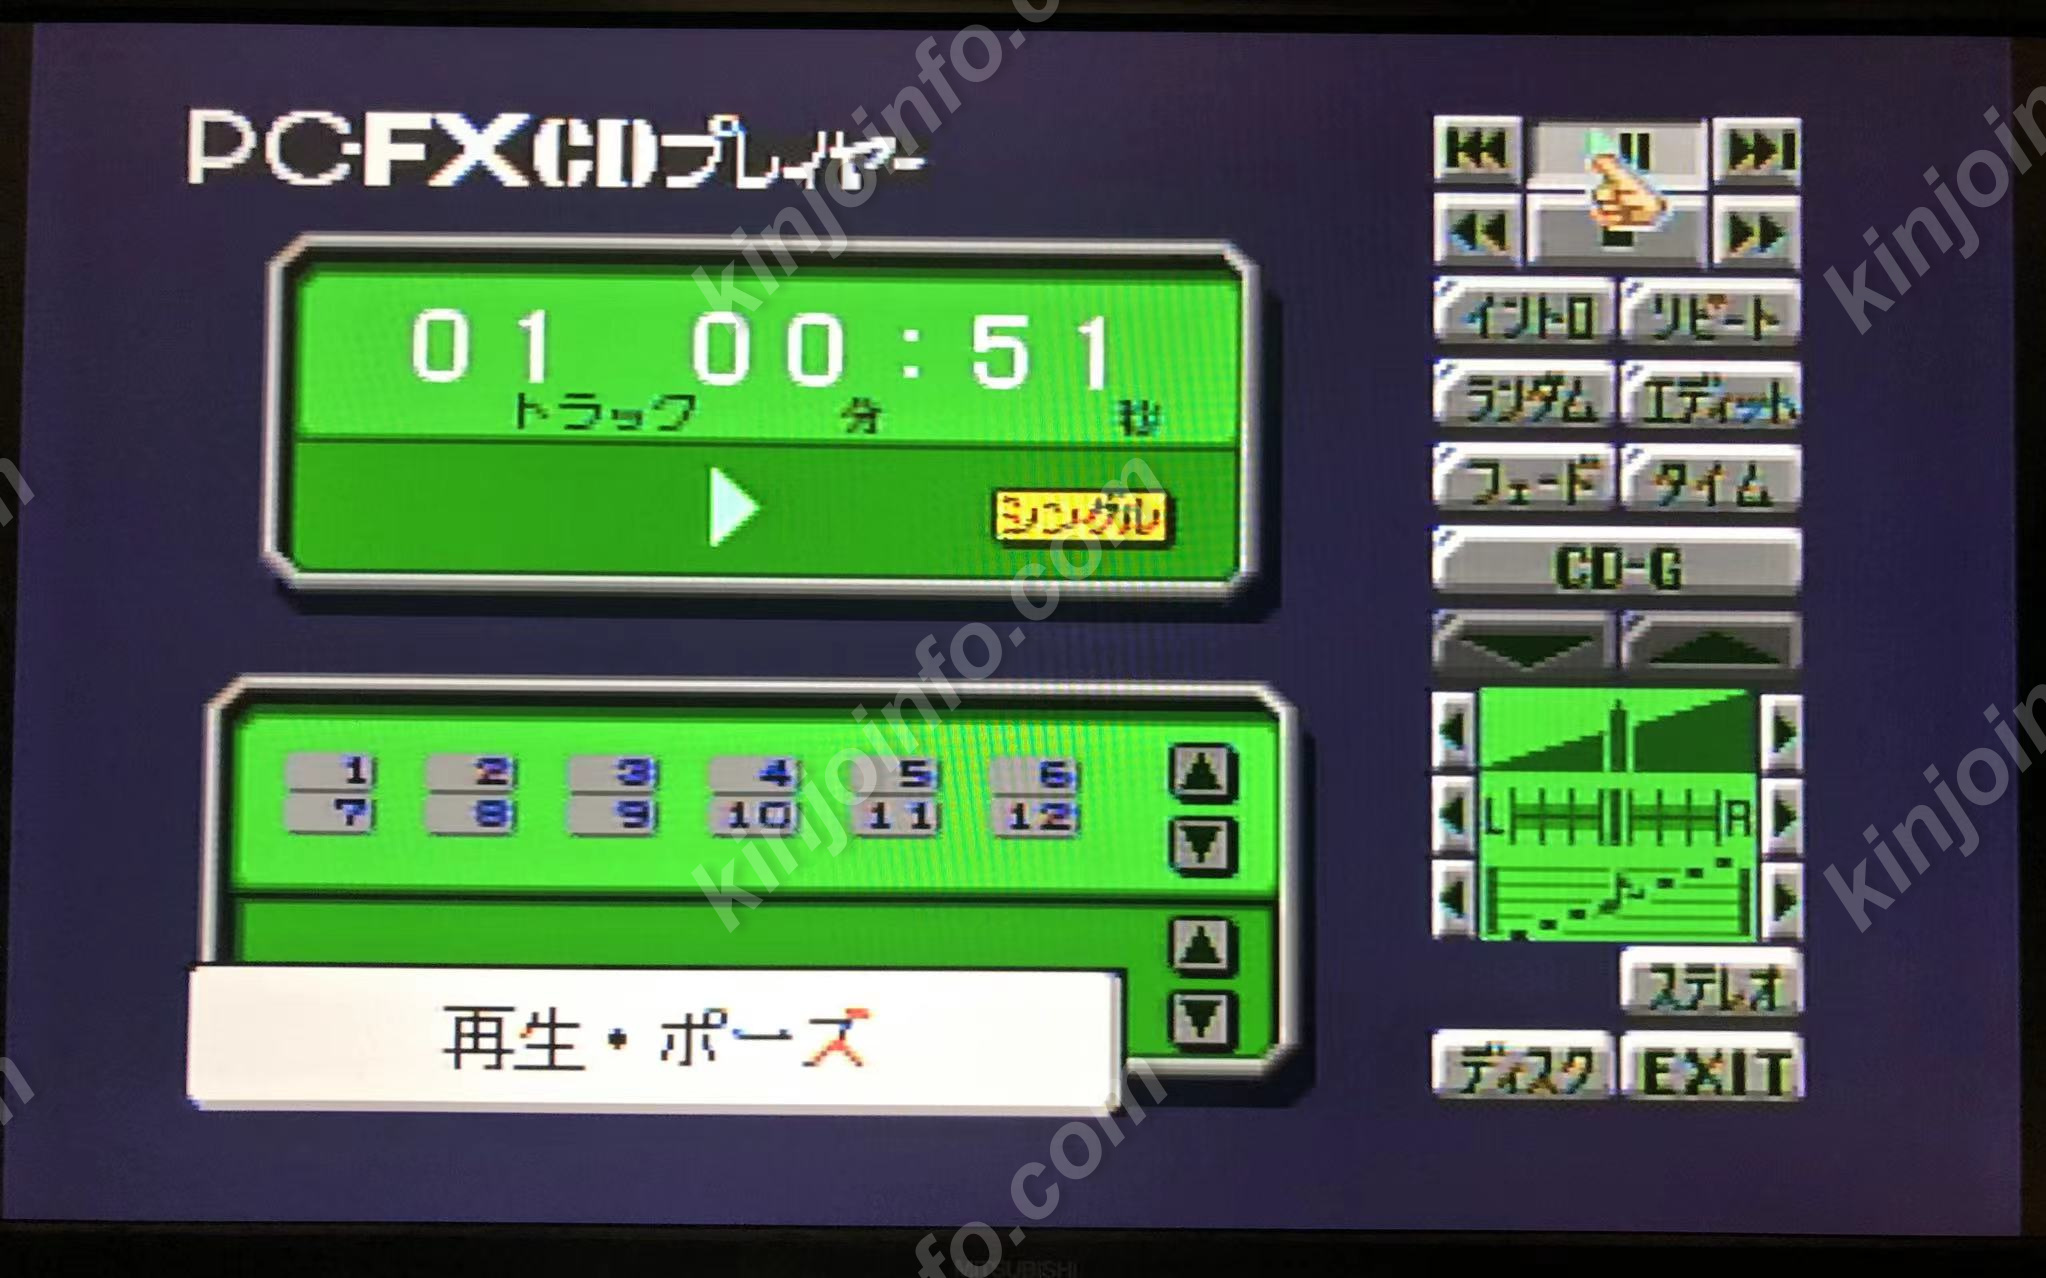 PC-FX本体一式+ソフト+メモリカード【中古・PC-FX日本版】 / kinjoinfo